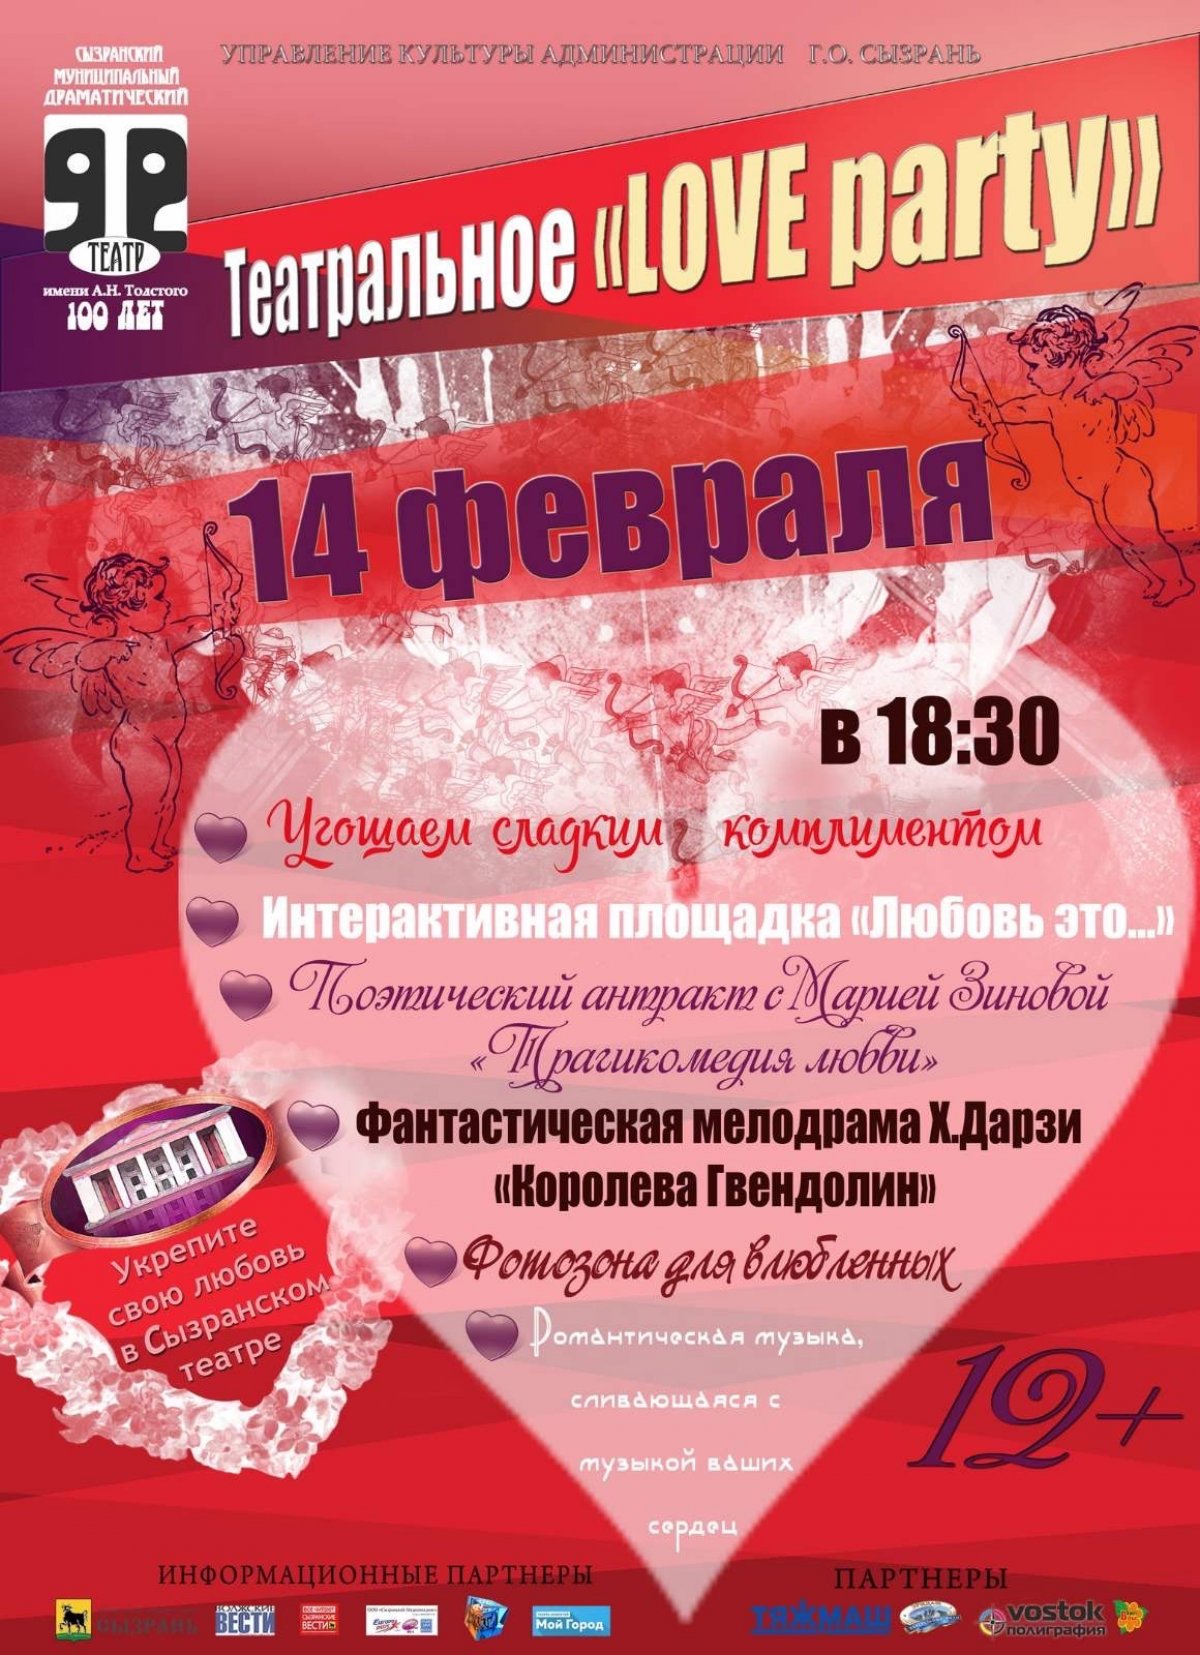 Сызранский драматический театр им. А.Н.Толстого приглашает Вас 14 февраля 2020 года в 18.30 час., чтобы отметить этот праздник вместе!